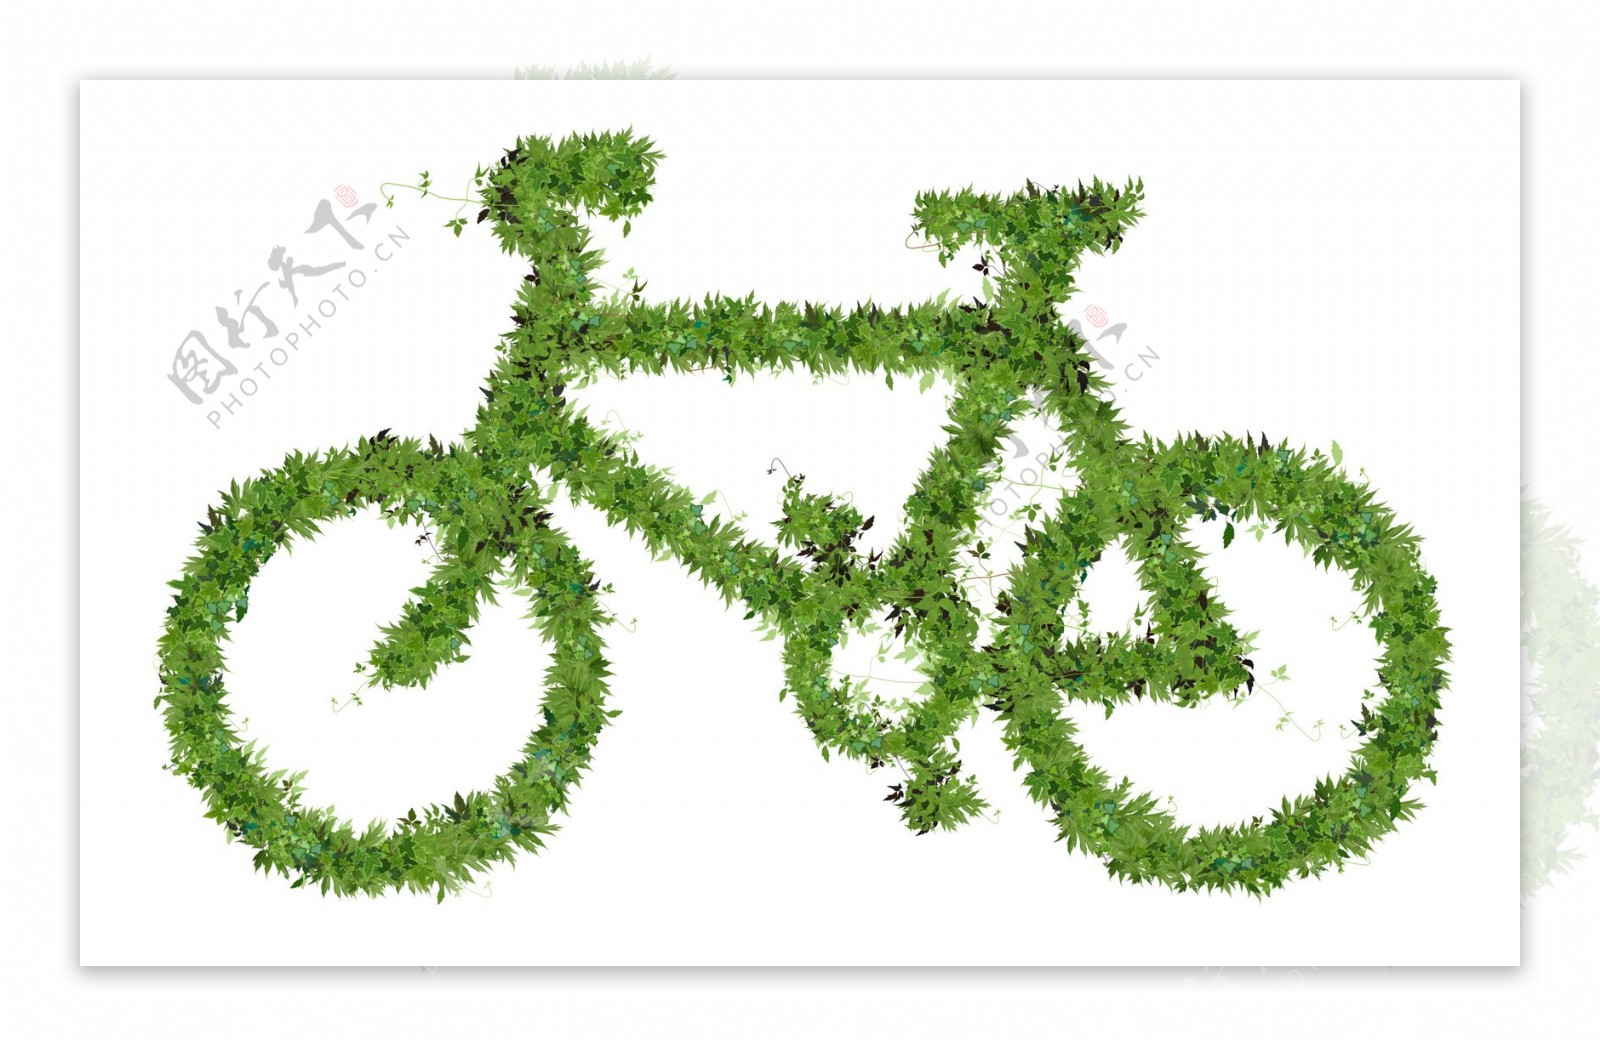 绿色自行车图片